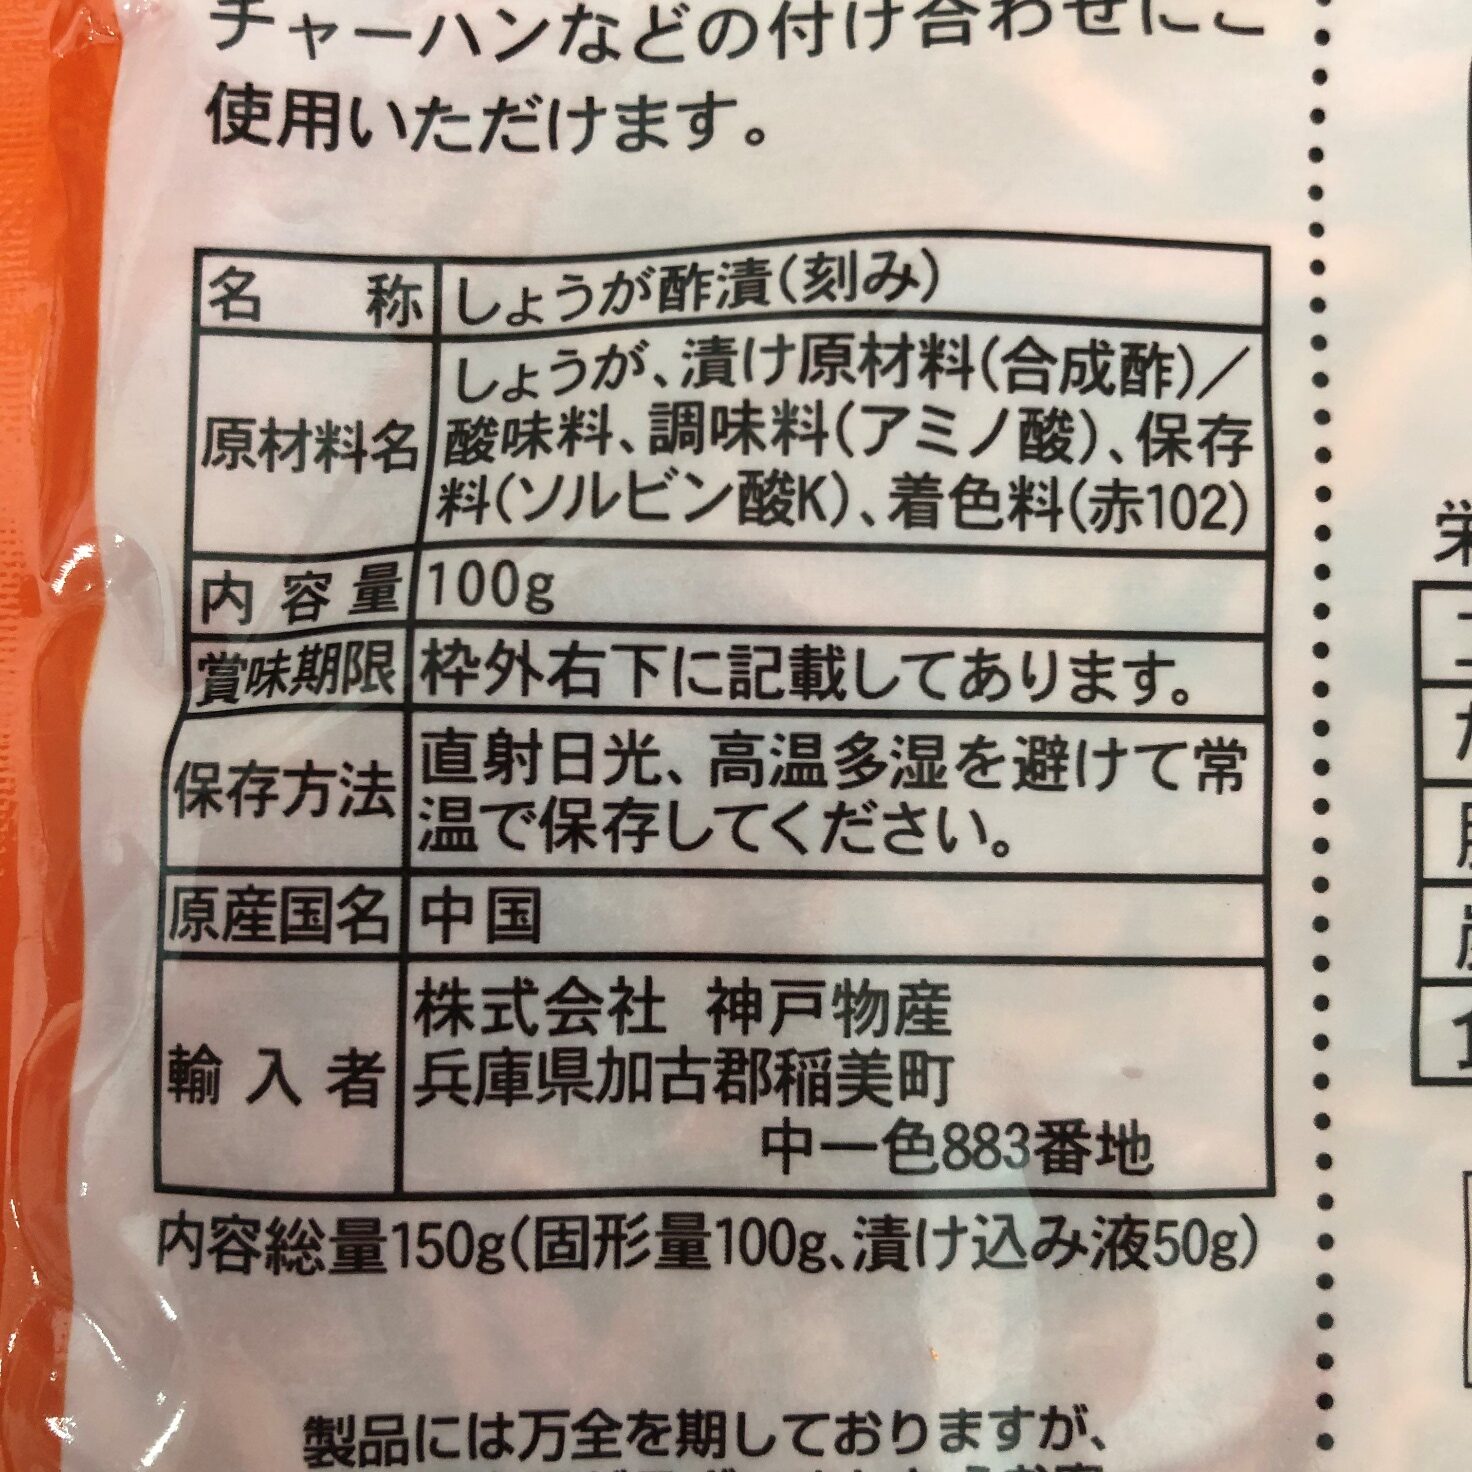 業務スーパーの紅生姜の原材料名と原産国名の表記